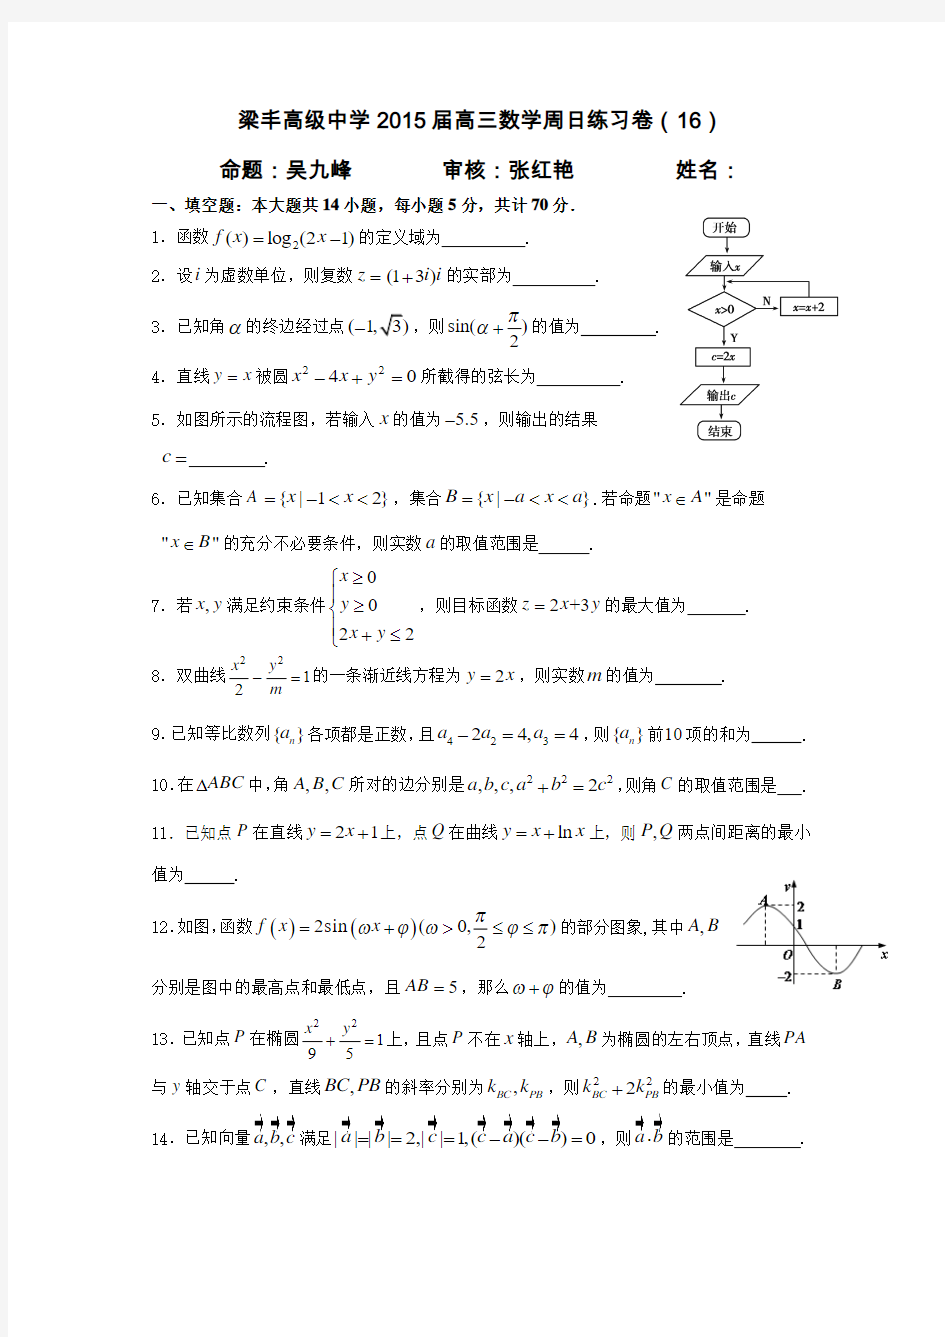 梁丰高级中学2015届高三数学周日练习卷(16)